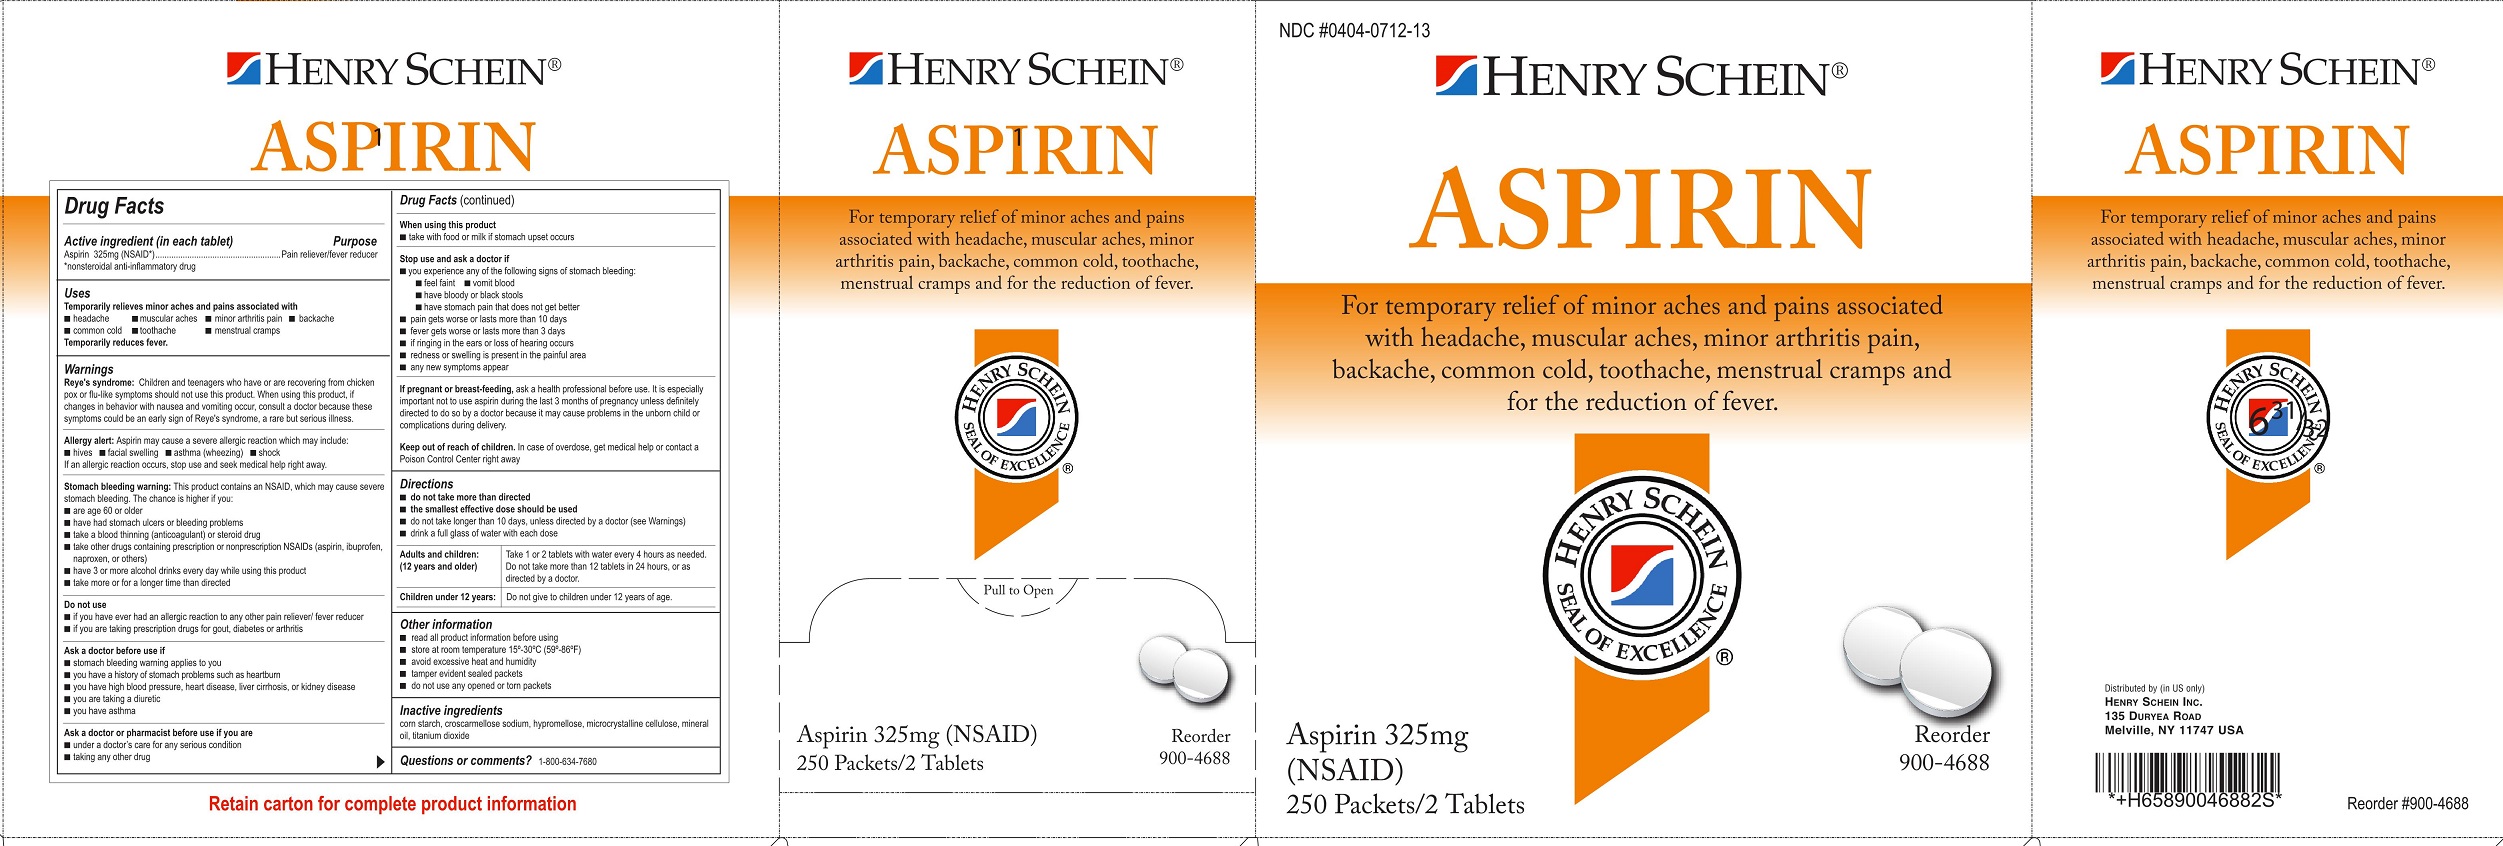 Henry Schein Aspirin